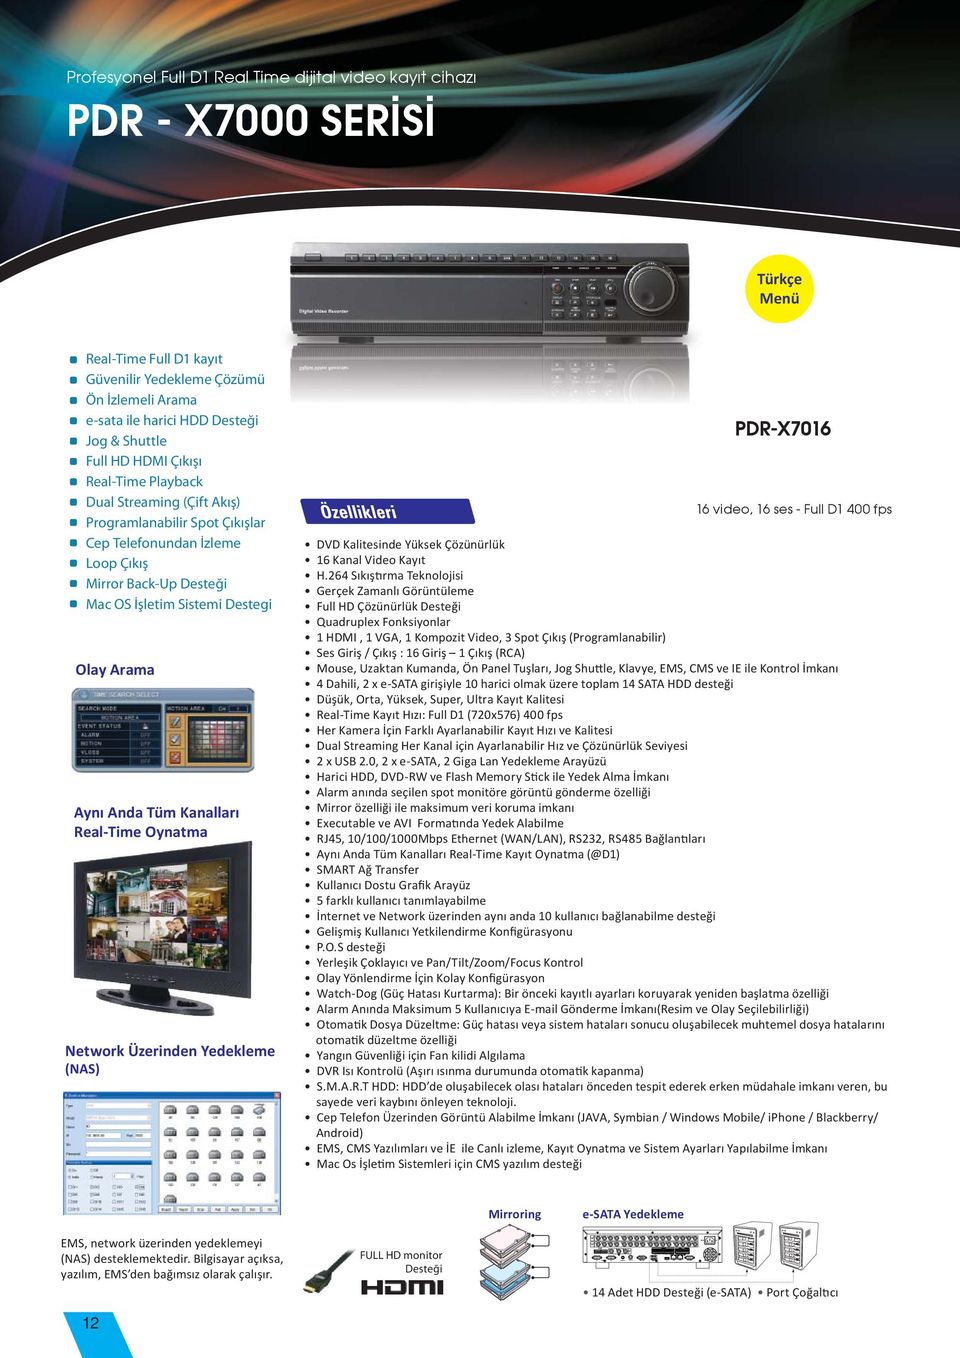 Arama Aynı Anda Tüm Kanalları Real-Time Oynatma Network Üzerinden Yedekleme (NAS) PDR-X7016 3200 $ 16 video, 16 ses - Full D1 400 fps DVD Kalitesinde Yüksek Çözünürlük 16 Kanal Video Kayıt Sıkıştırma